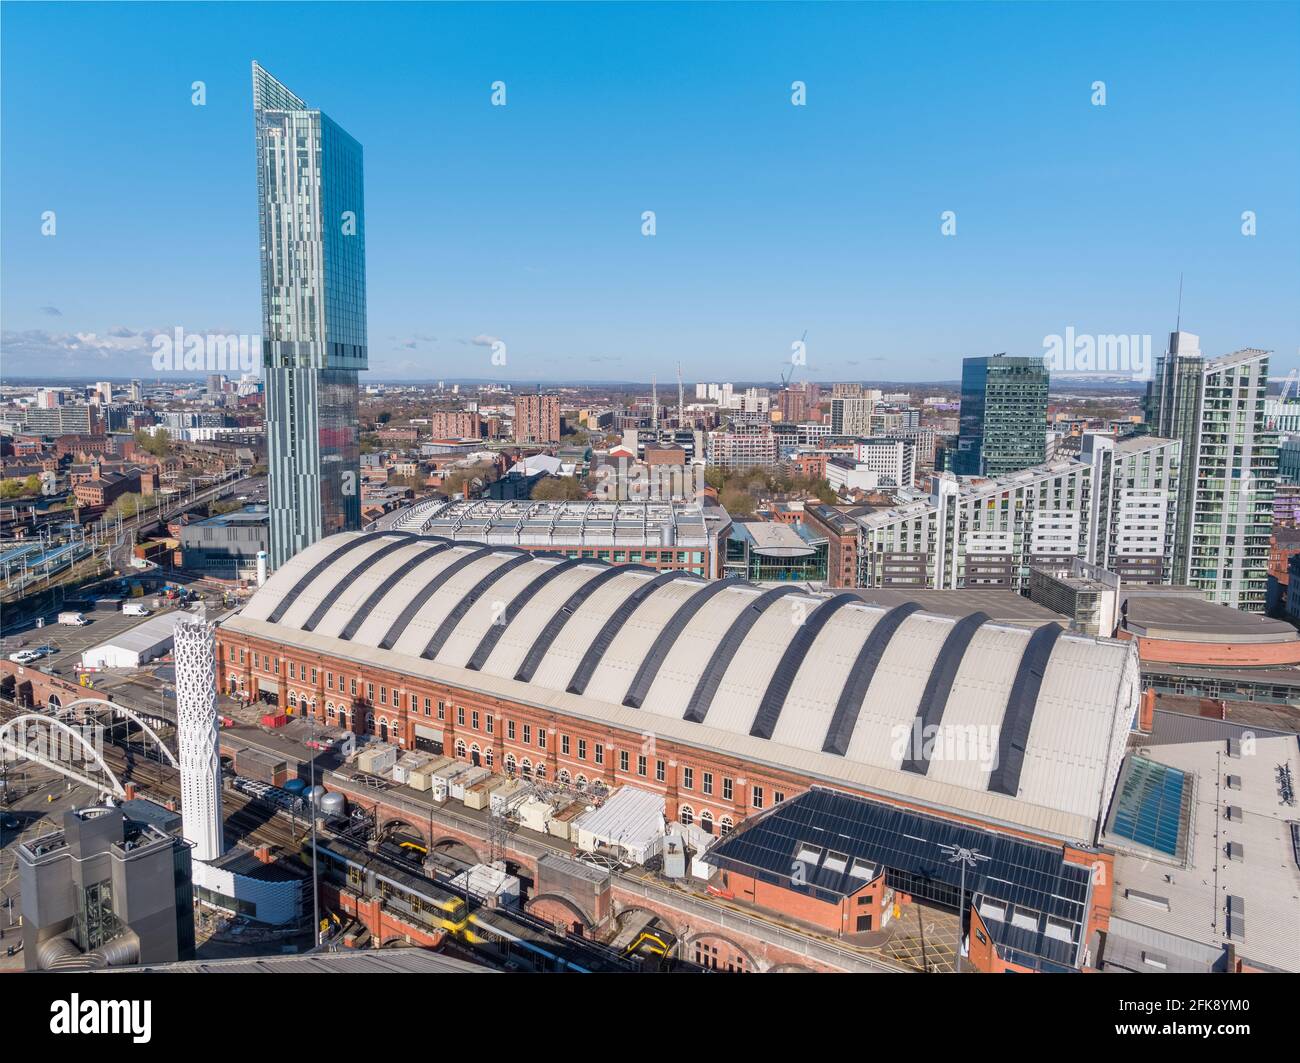 Fotografia aerea del centro di Manchester in una giornata di sole che include la Beetham Tower, Deansgate Square, Manchester Central, AXIS Tower Foto Stock